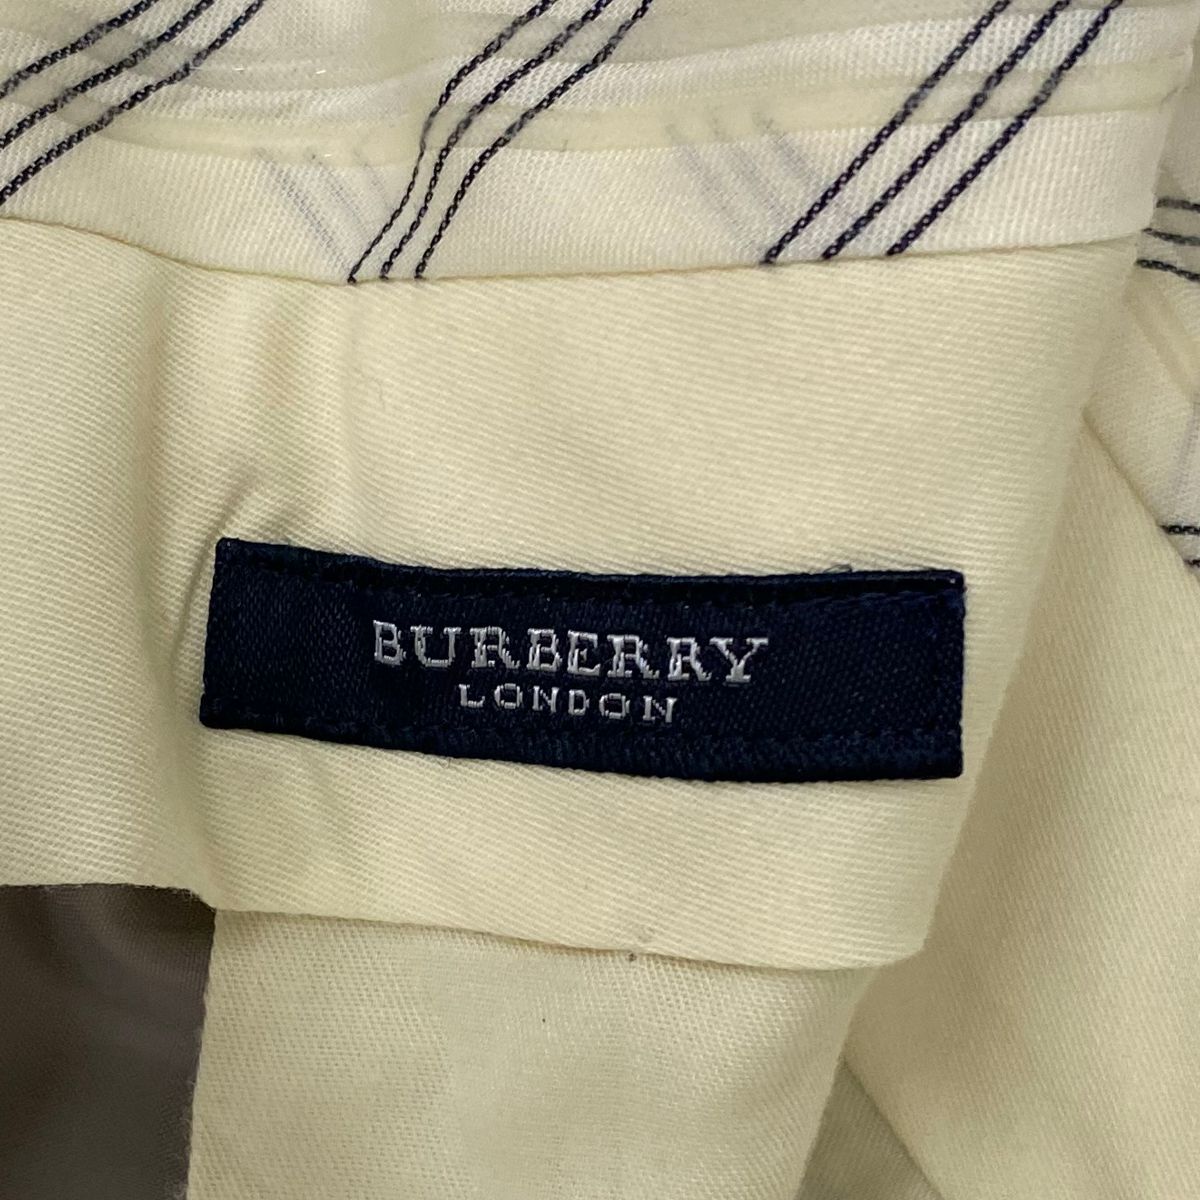  бесплатная доставка # отличный [BURBERRY LONDON Burberry London ] summer шерсть слаксы брюки сделано в Японии 3 season весна лето осень мужской оттенок коричневого 